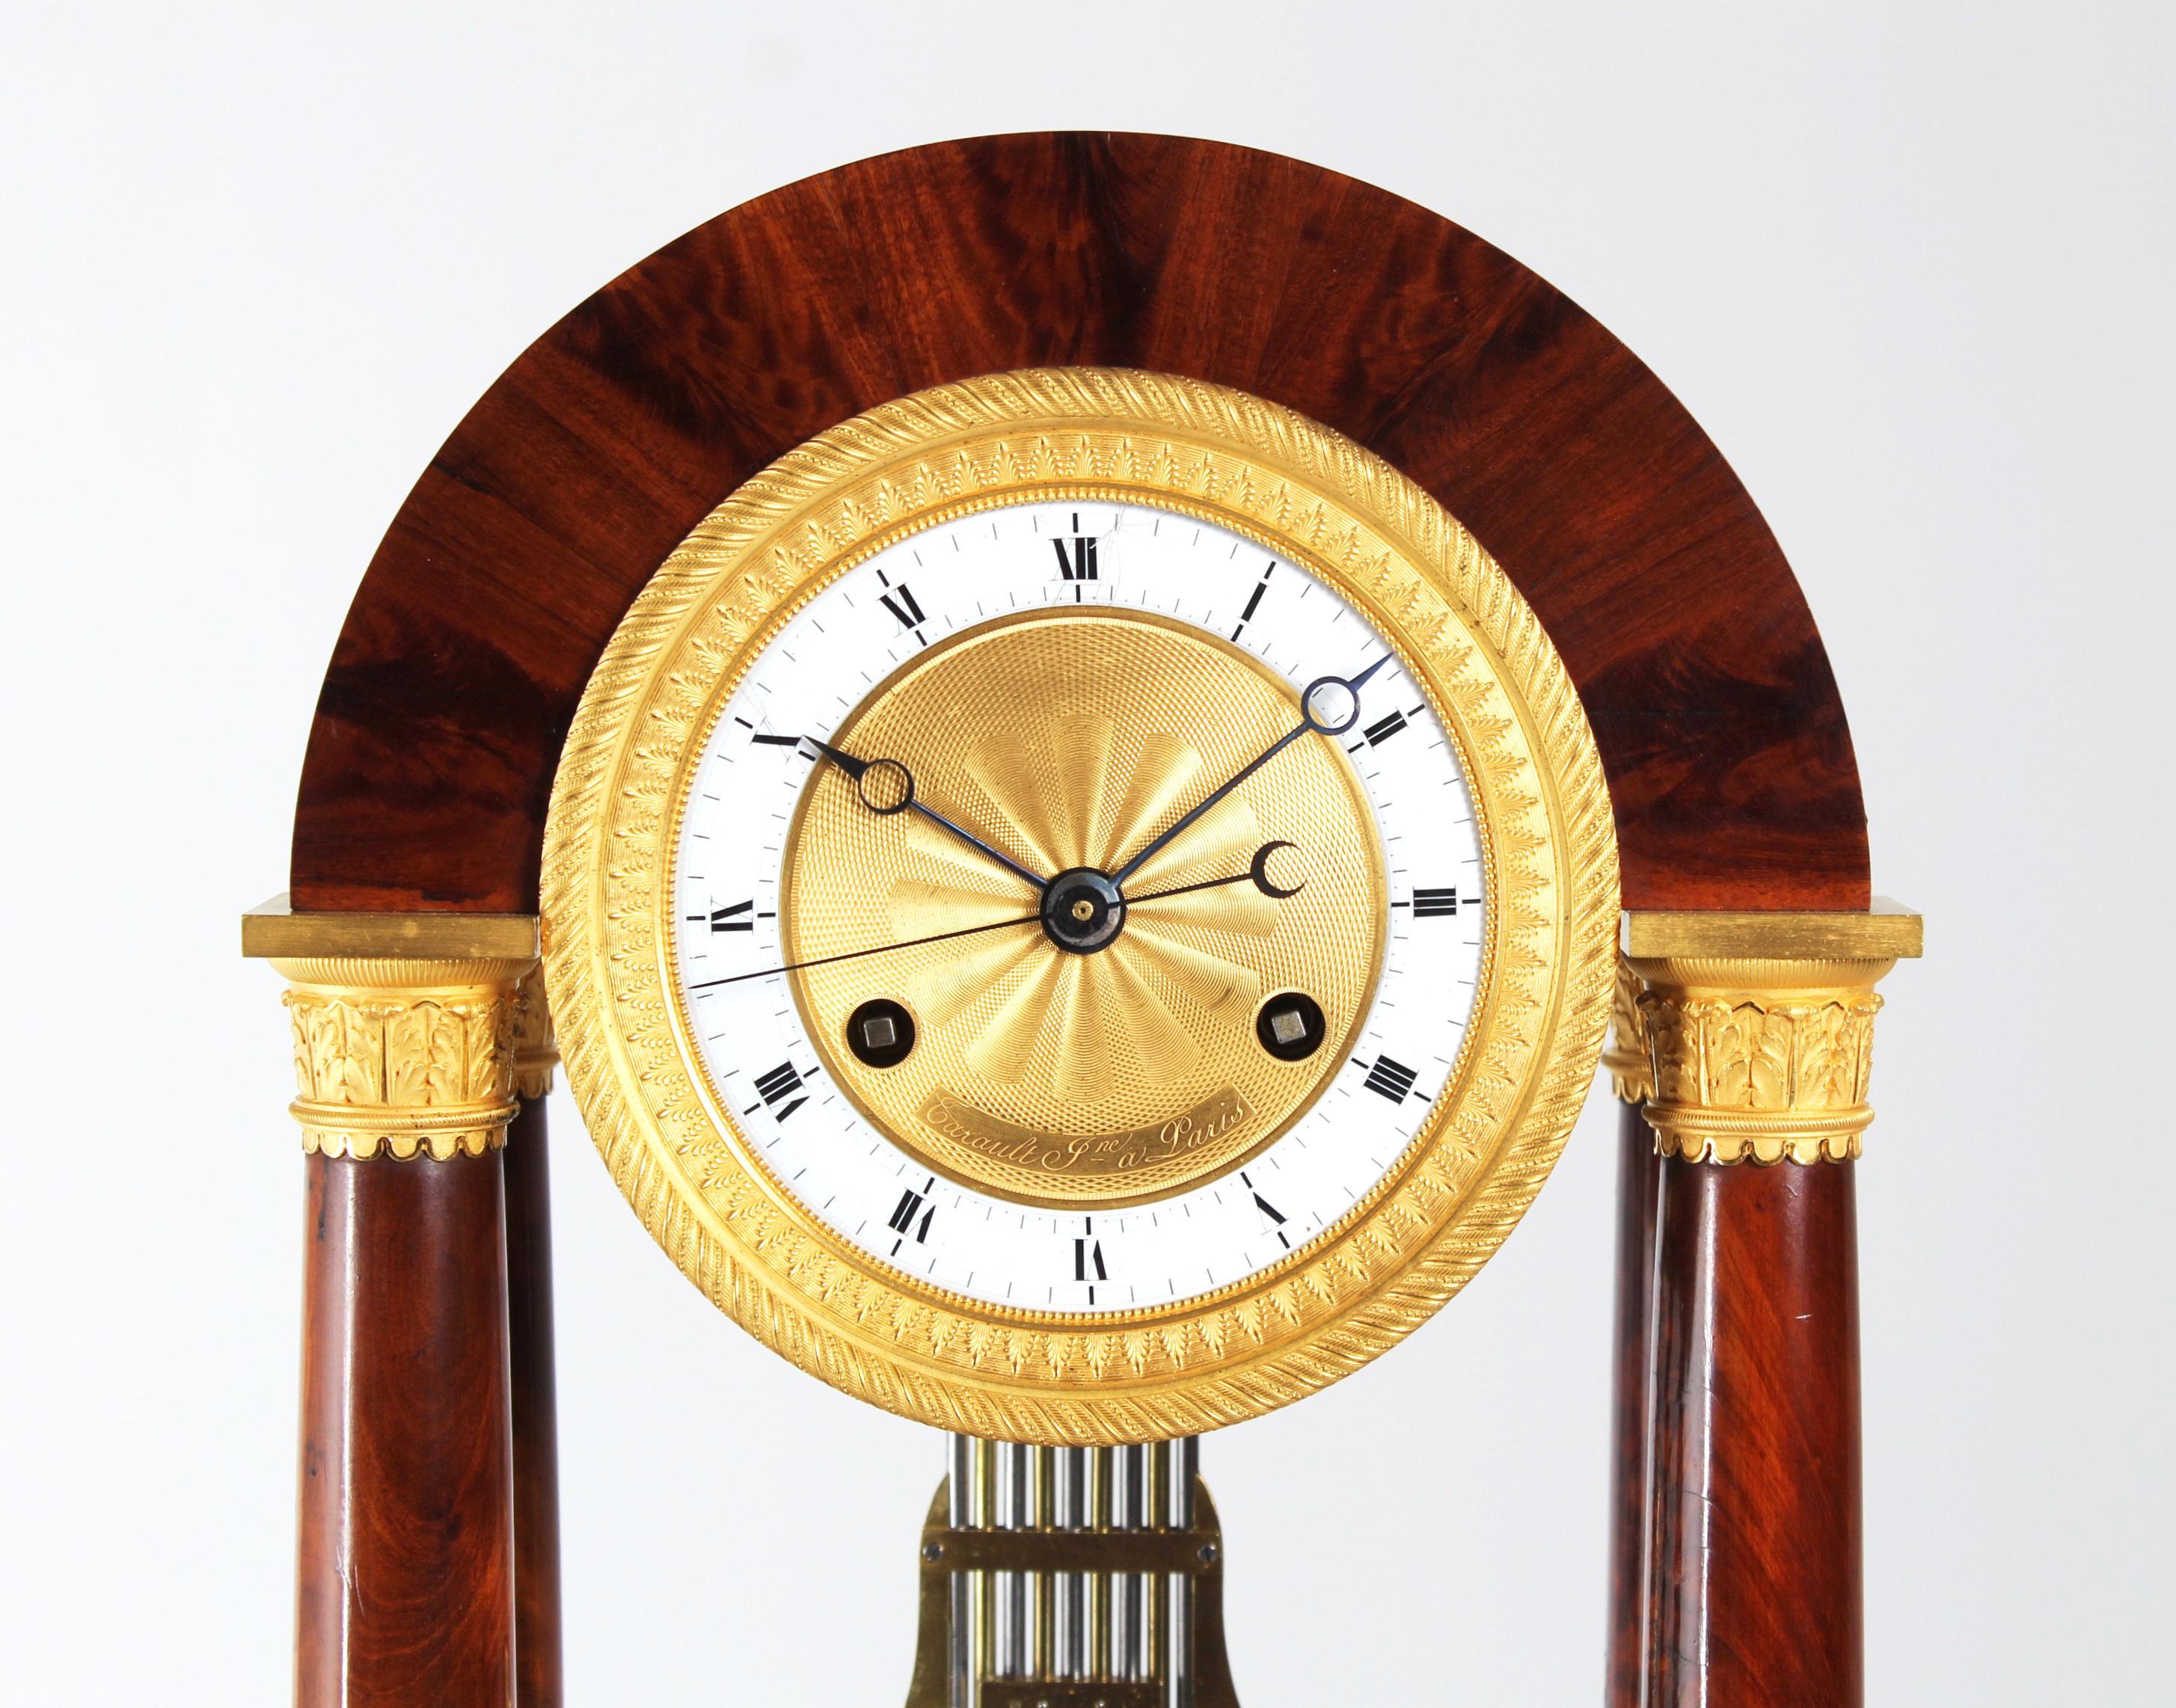 Régulateur de table - Horloge portail de précision

Paris
acajou, bronze, émail
vers 1825

Dimensions : H x L x P : 49 x 28 x 15 cm : H x L x P : 49 x 28 x 15 cm

Description :
Horloge ancienne à portail de précision des années 1820.
L'arc de cercle